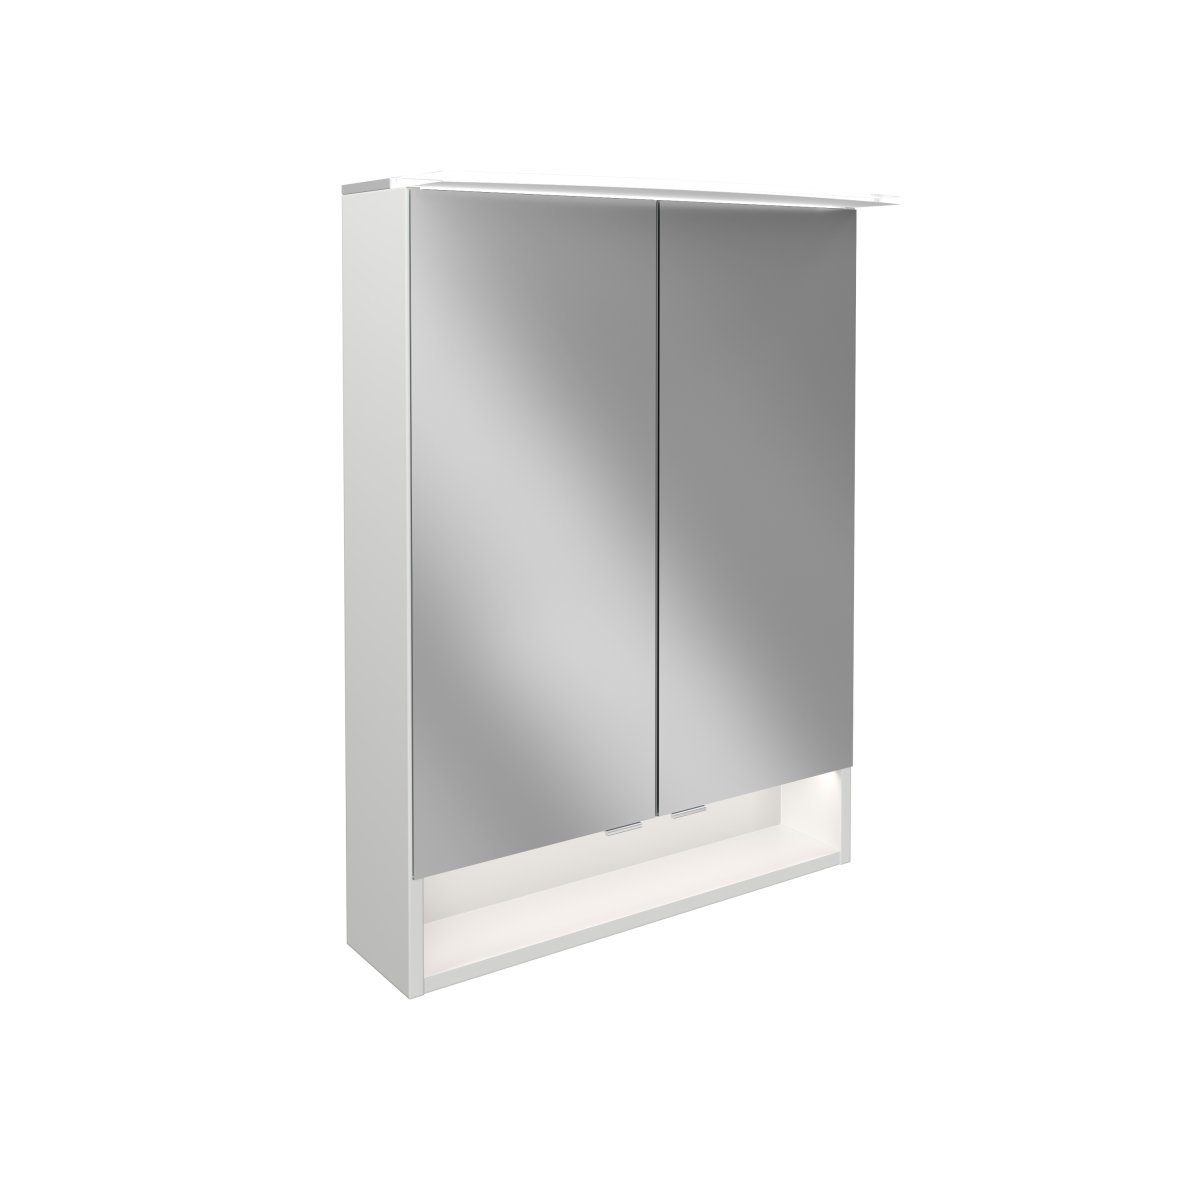 FACKELMANN Badezimmerspiegelschrank FACKELMANN LED Spiegelschrank B.STYLE / Badschrank mit gedämpften Scharnieren / Maße (B x